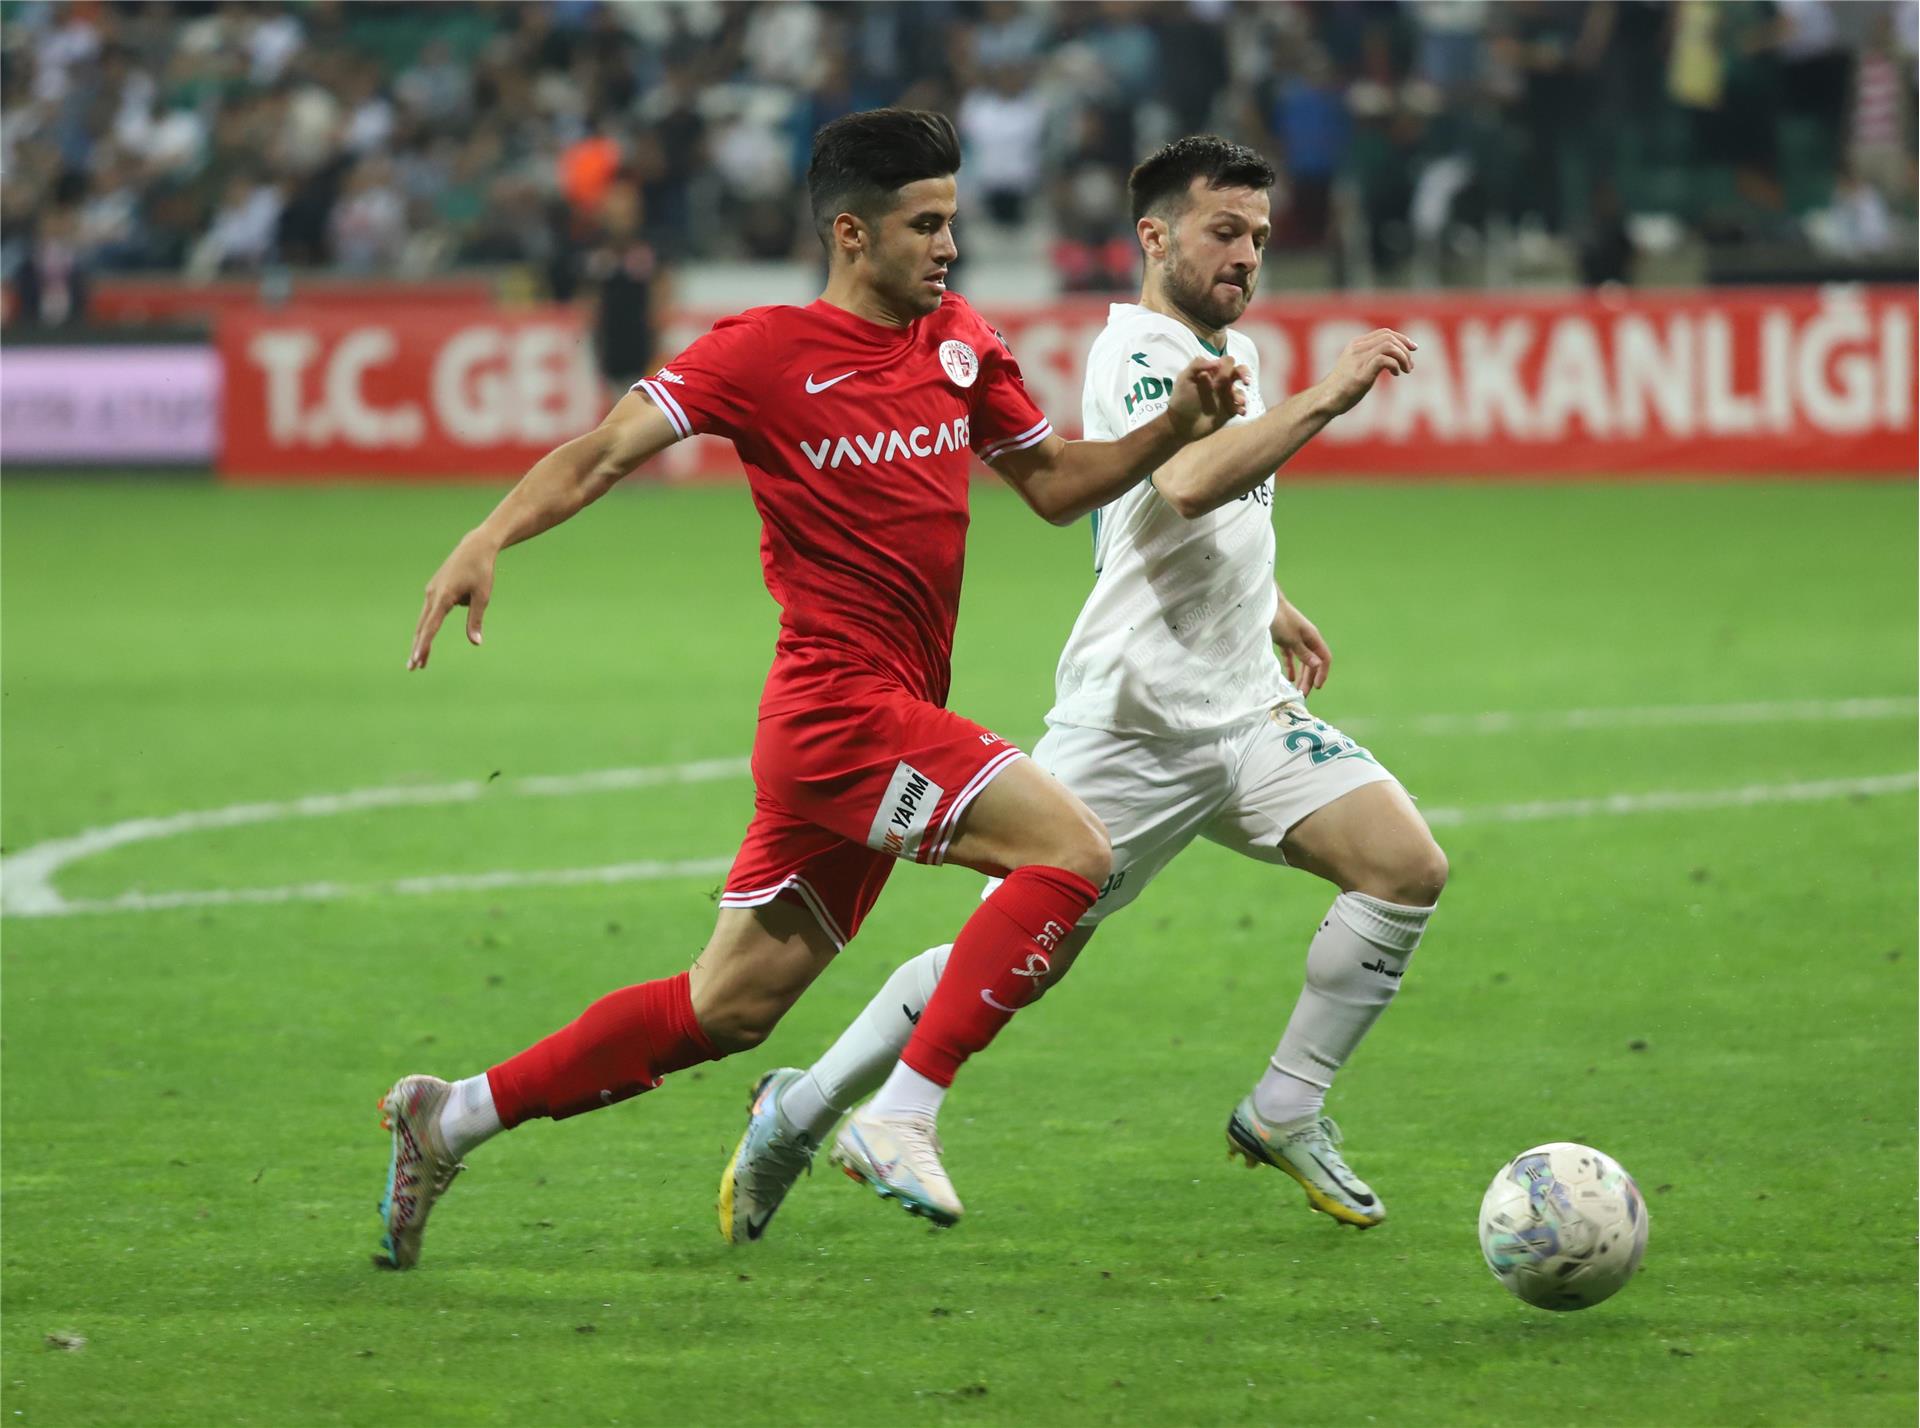 B. Giresunspor 2-0 FTA Antalyaspor